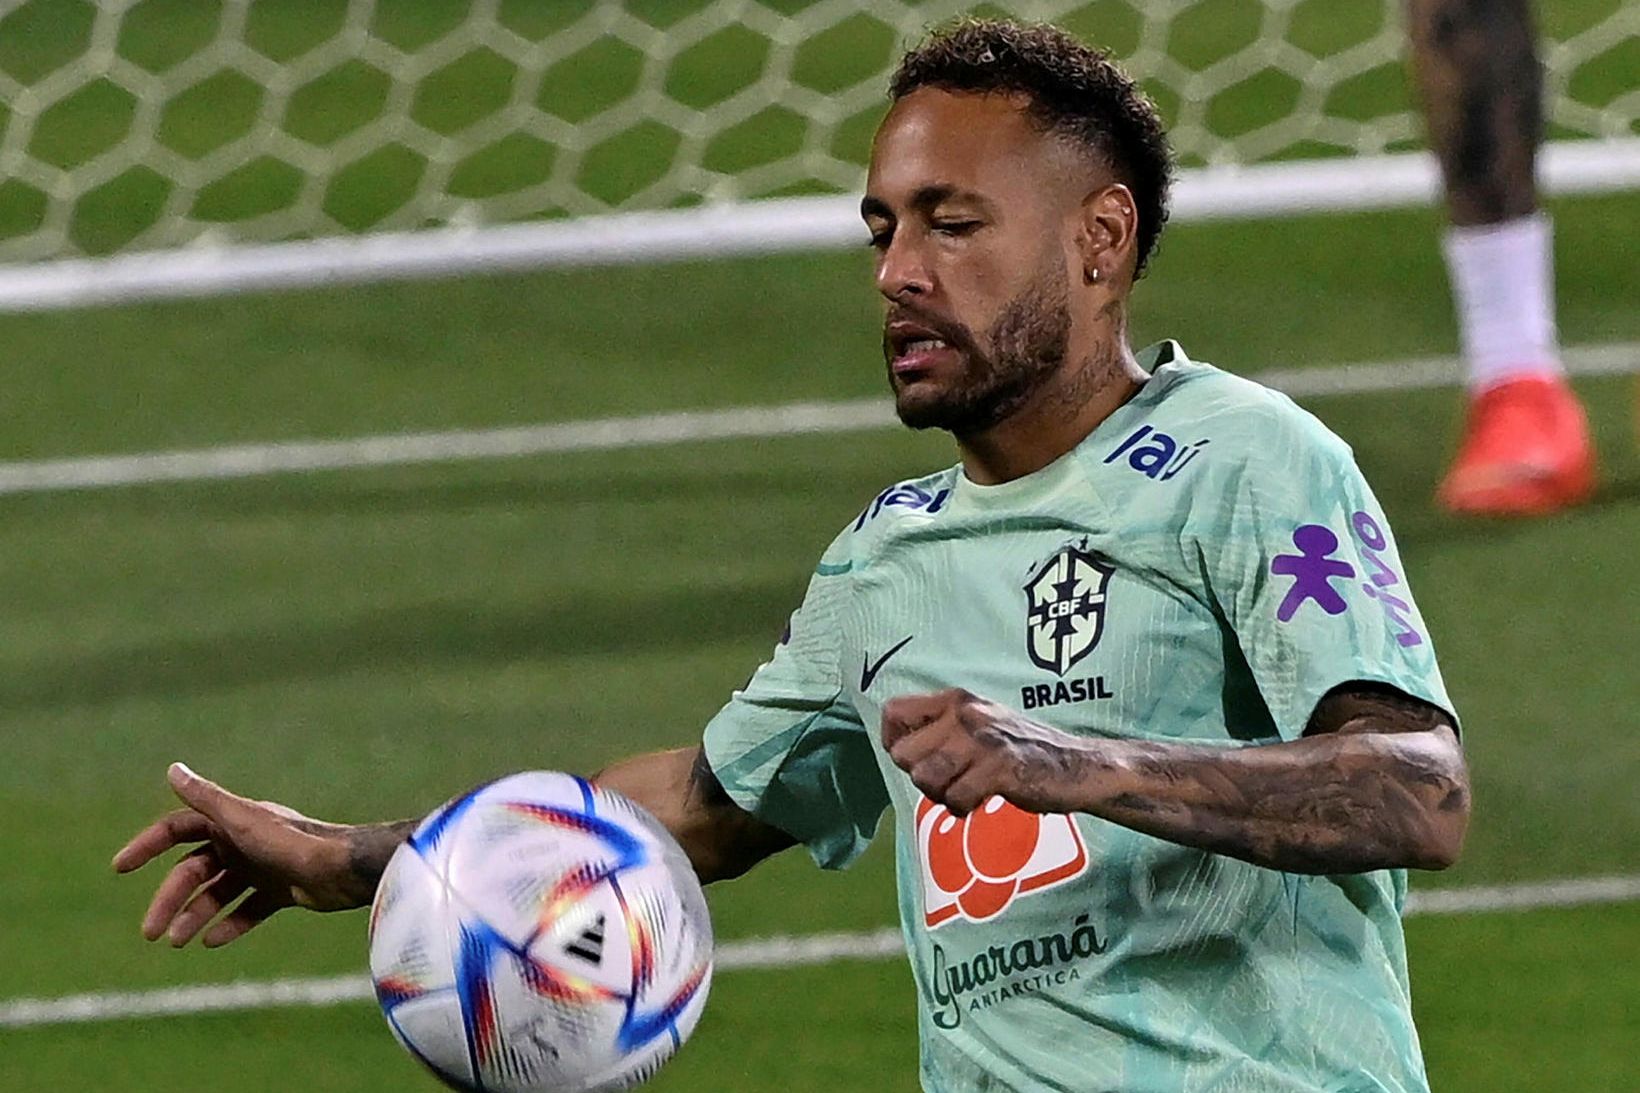 Neymar freistar þess að slá markamet Pelé fyrir Brasilíu á …